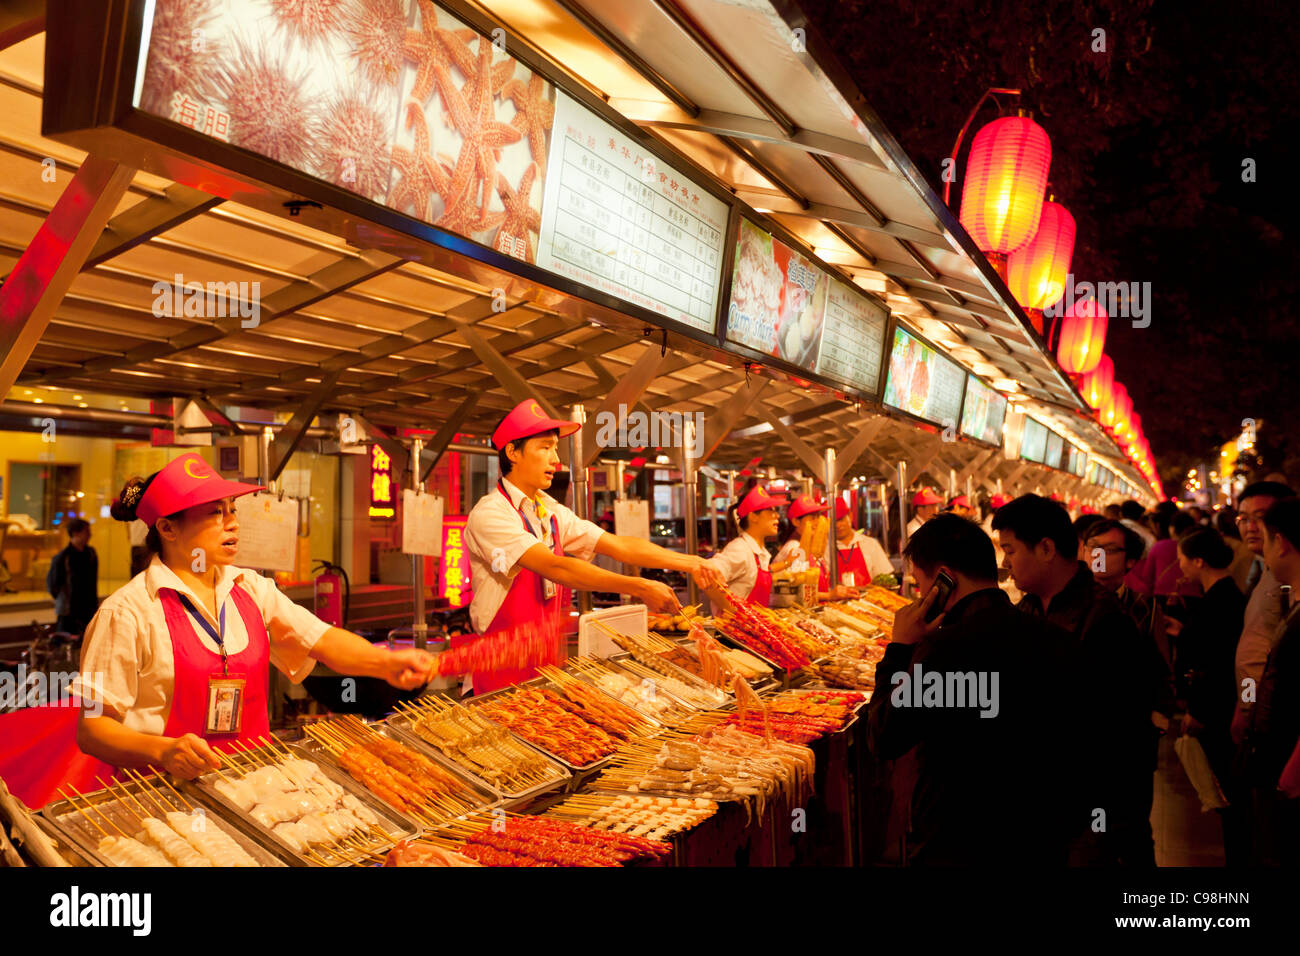 Wangfujing night market, Beijing, Peoples Republic of China, Asia Stock Photo